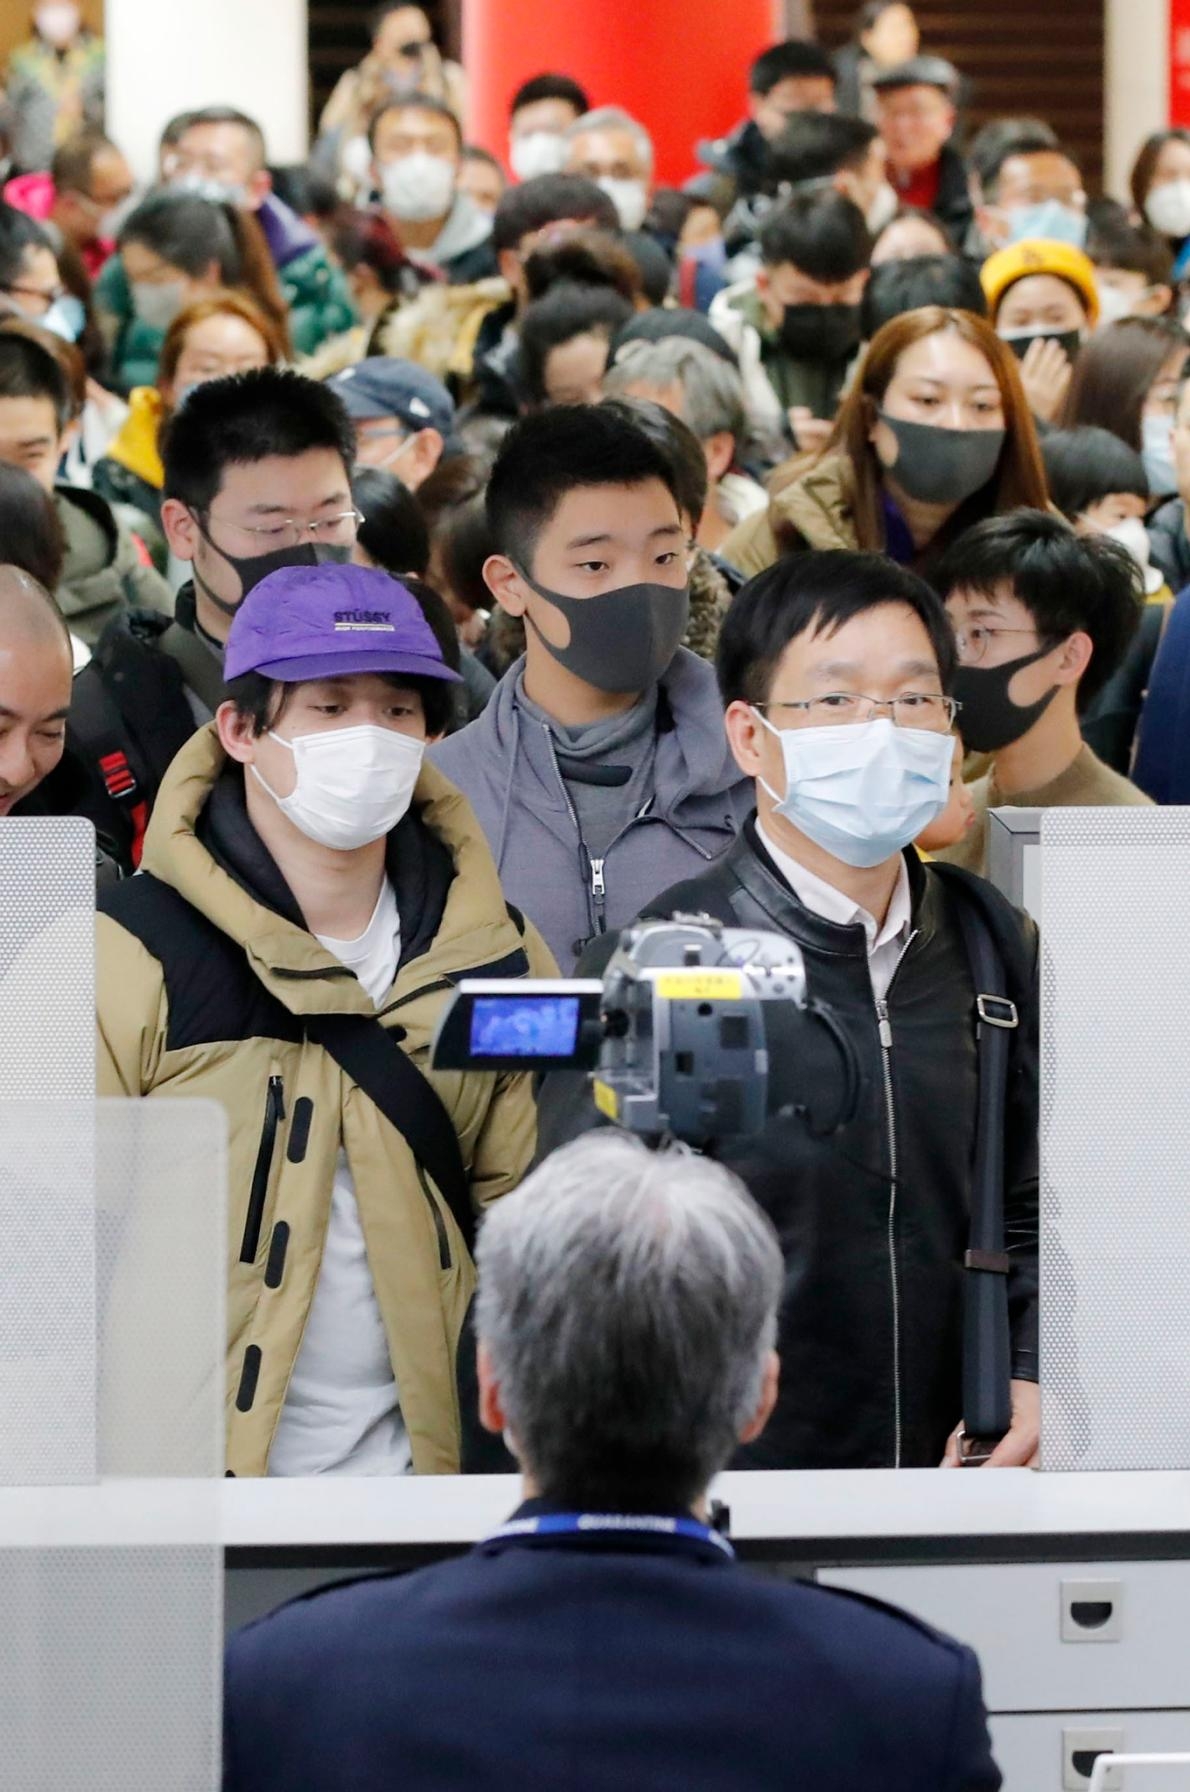 2020年1月23日，從新型冠狀病毒肺炎爆發起源地中國武漢飛抵日本的旅客，正通過東京成田機場的檢疫。前景中架設的是溫度監控儀器，用以檢查旅客的體溫。PHOTOGRAPH BY KYODO VIA AP IMAGES